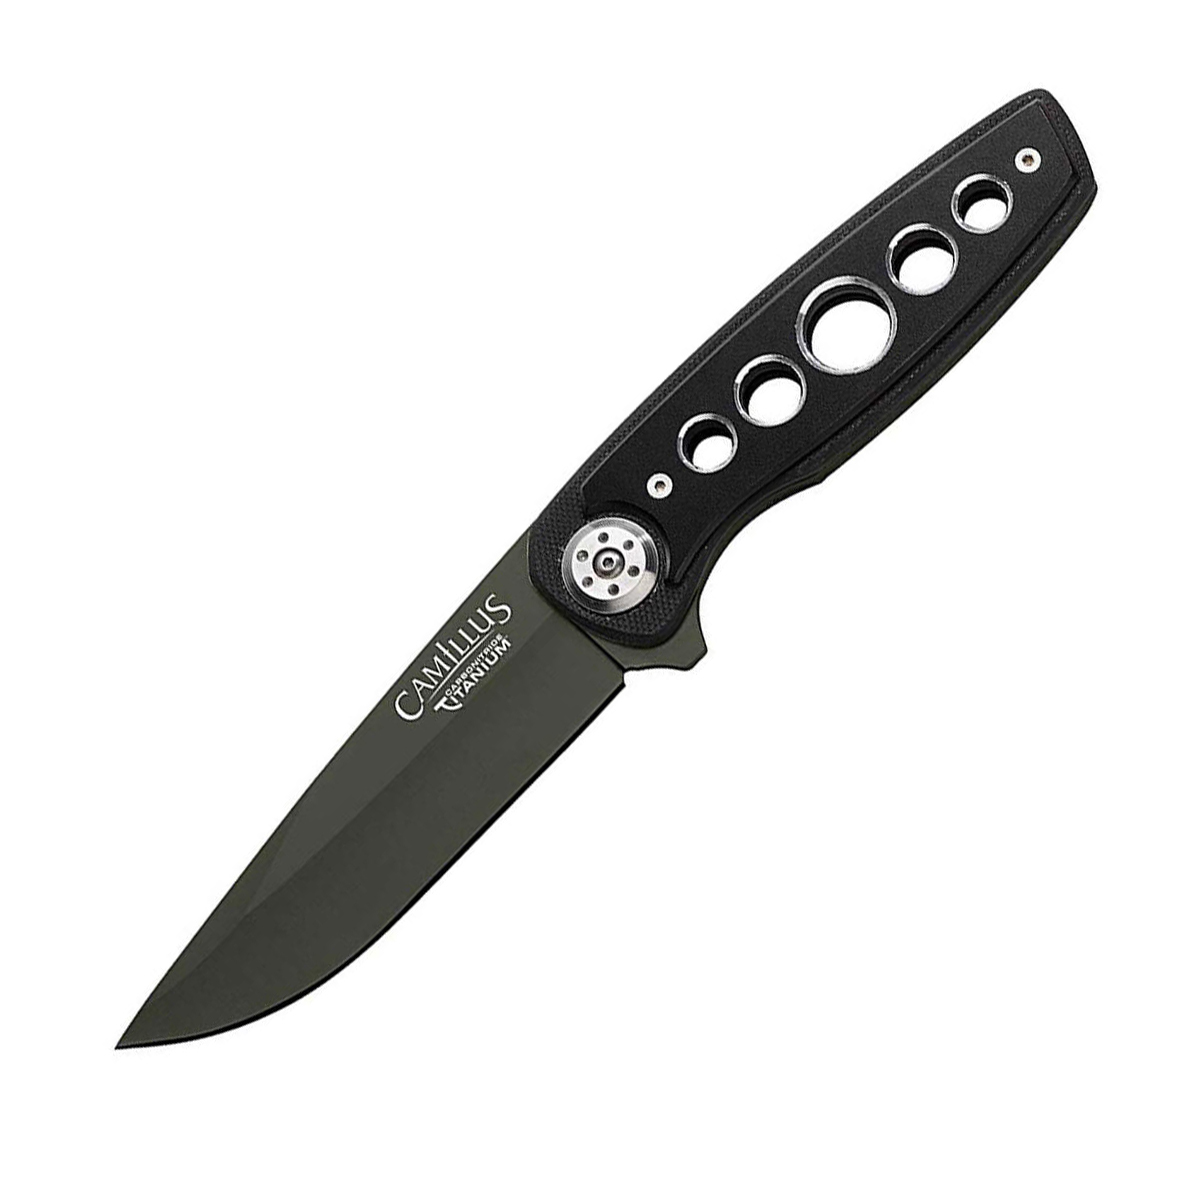 Нож с фиксированным клинком Camillus EDC, сталь AUS-8, рукоять термопластик GRN, чёрный